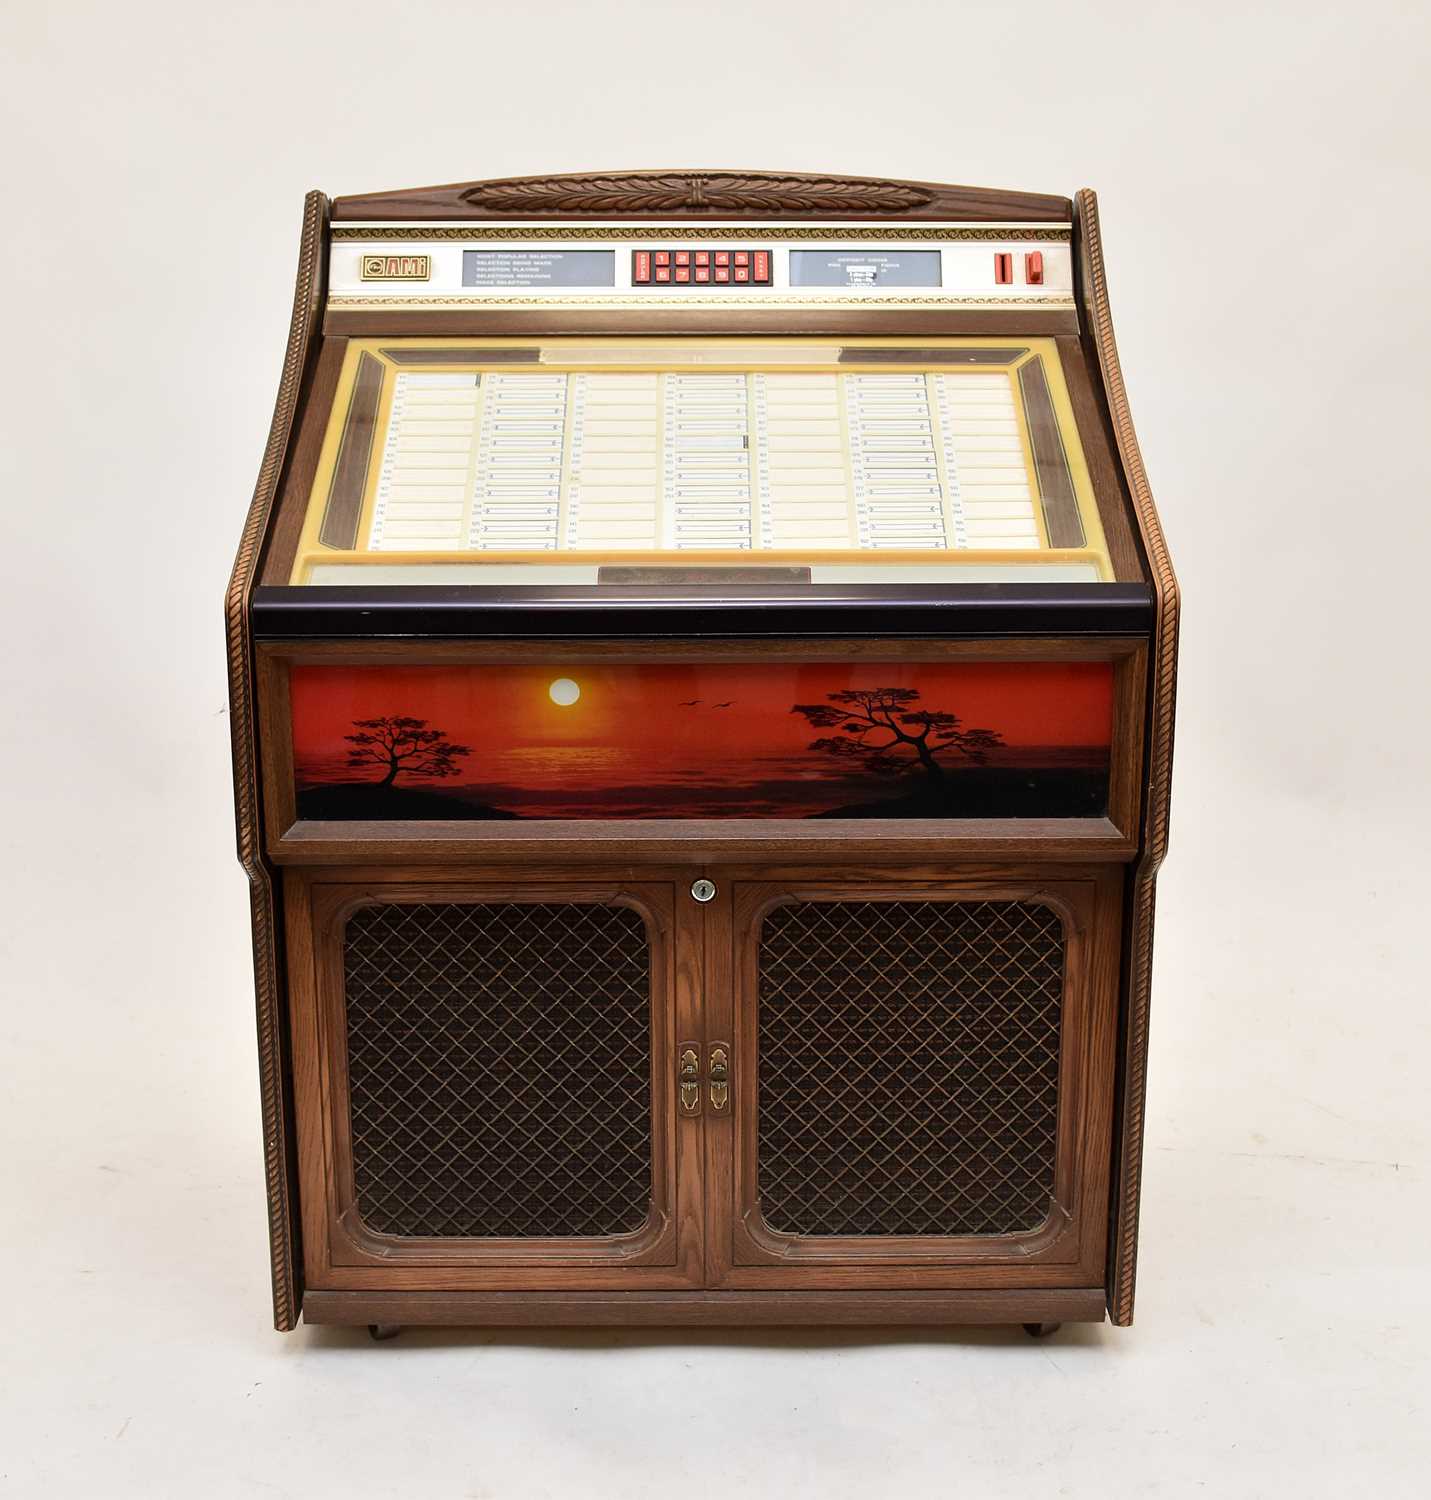 A vintage Rowe AMi jukebox